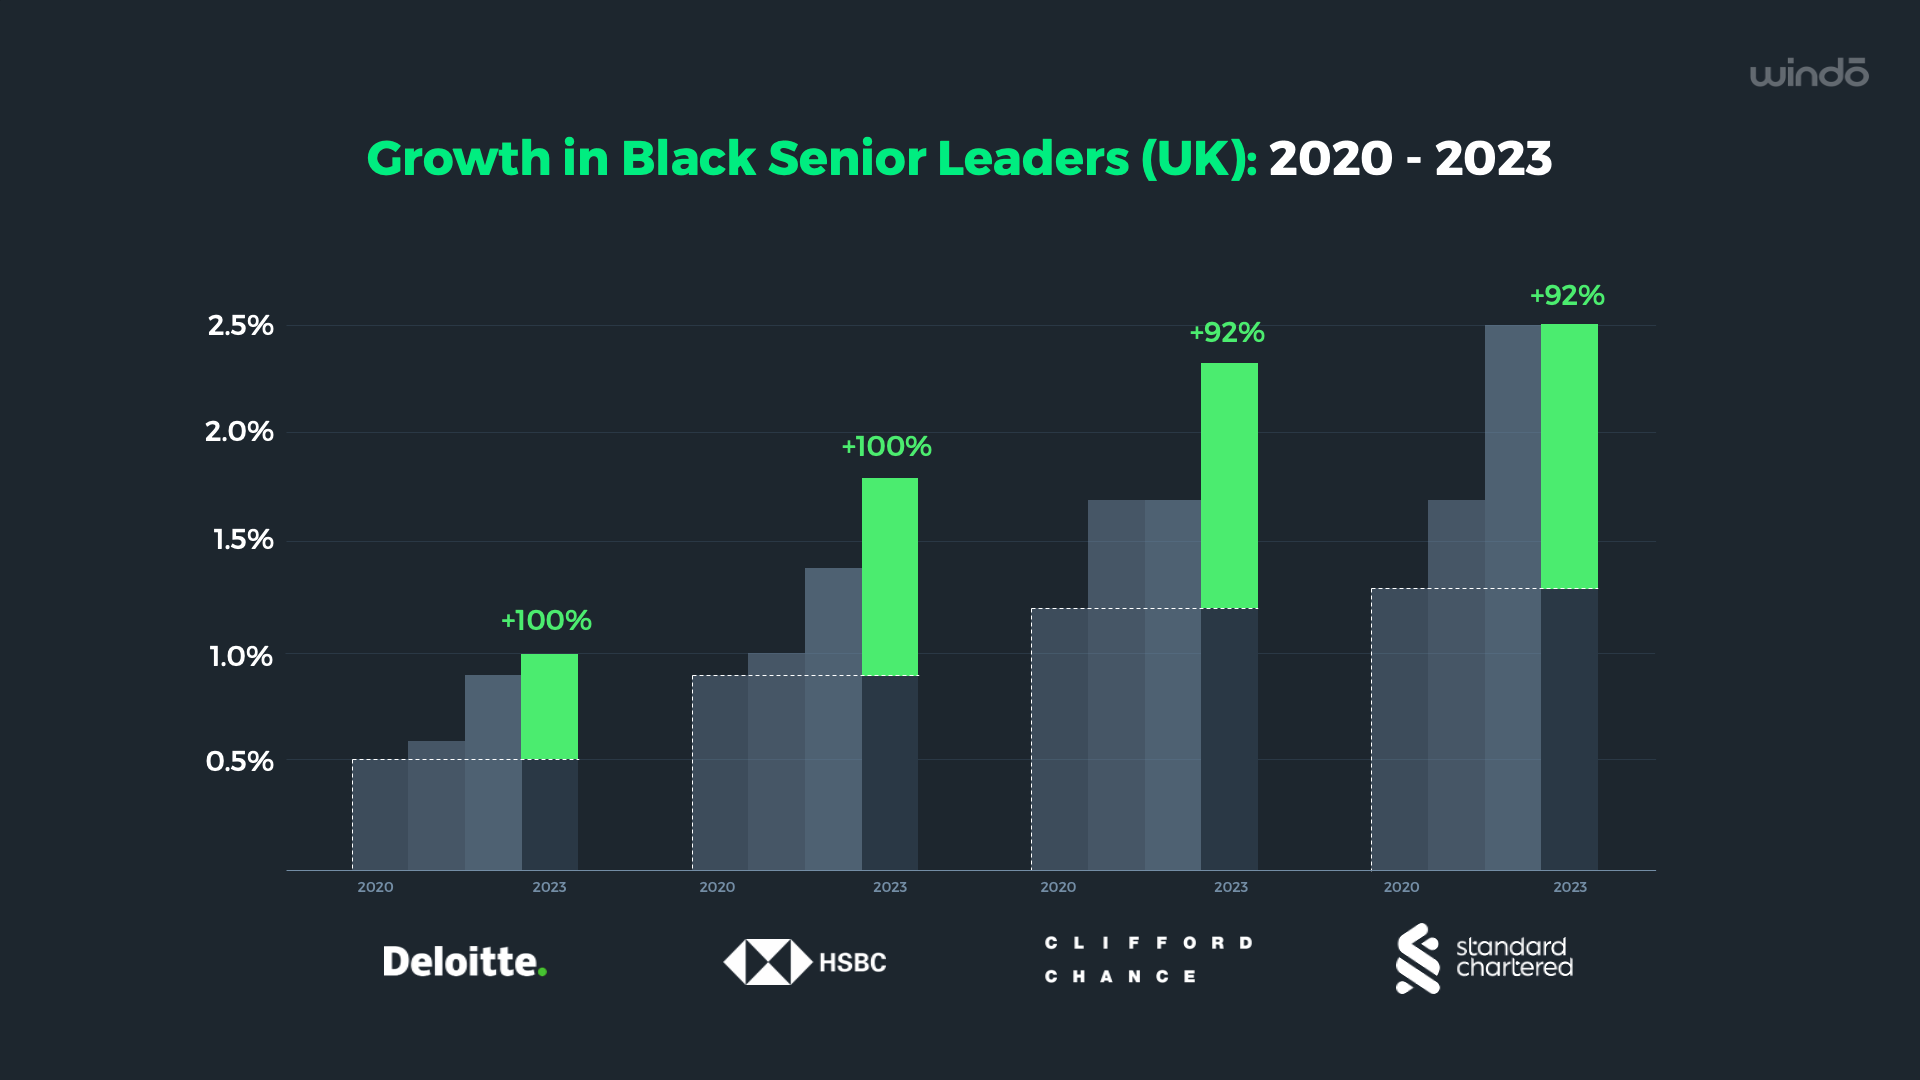 Growth_in_Black_Senior_Leaders_UK_2023_windo